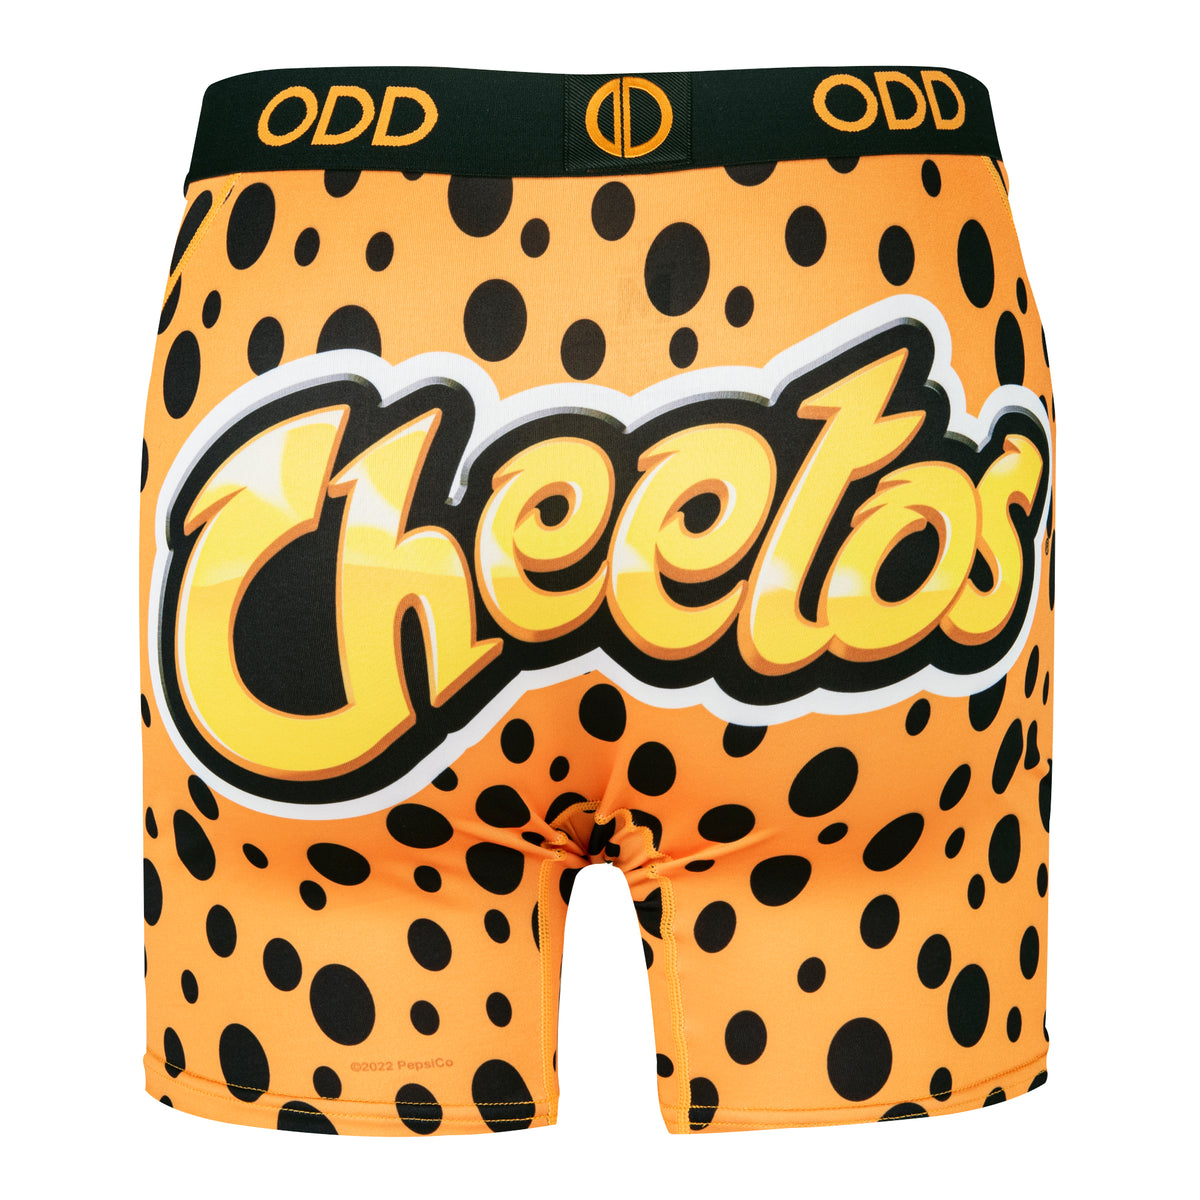 Cheetos - Men's Boxer Brief